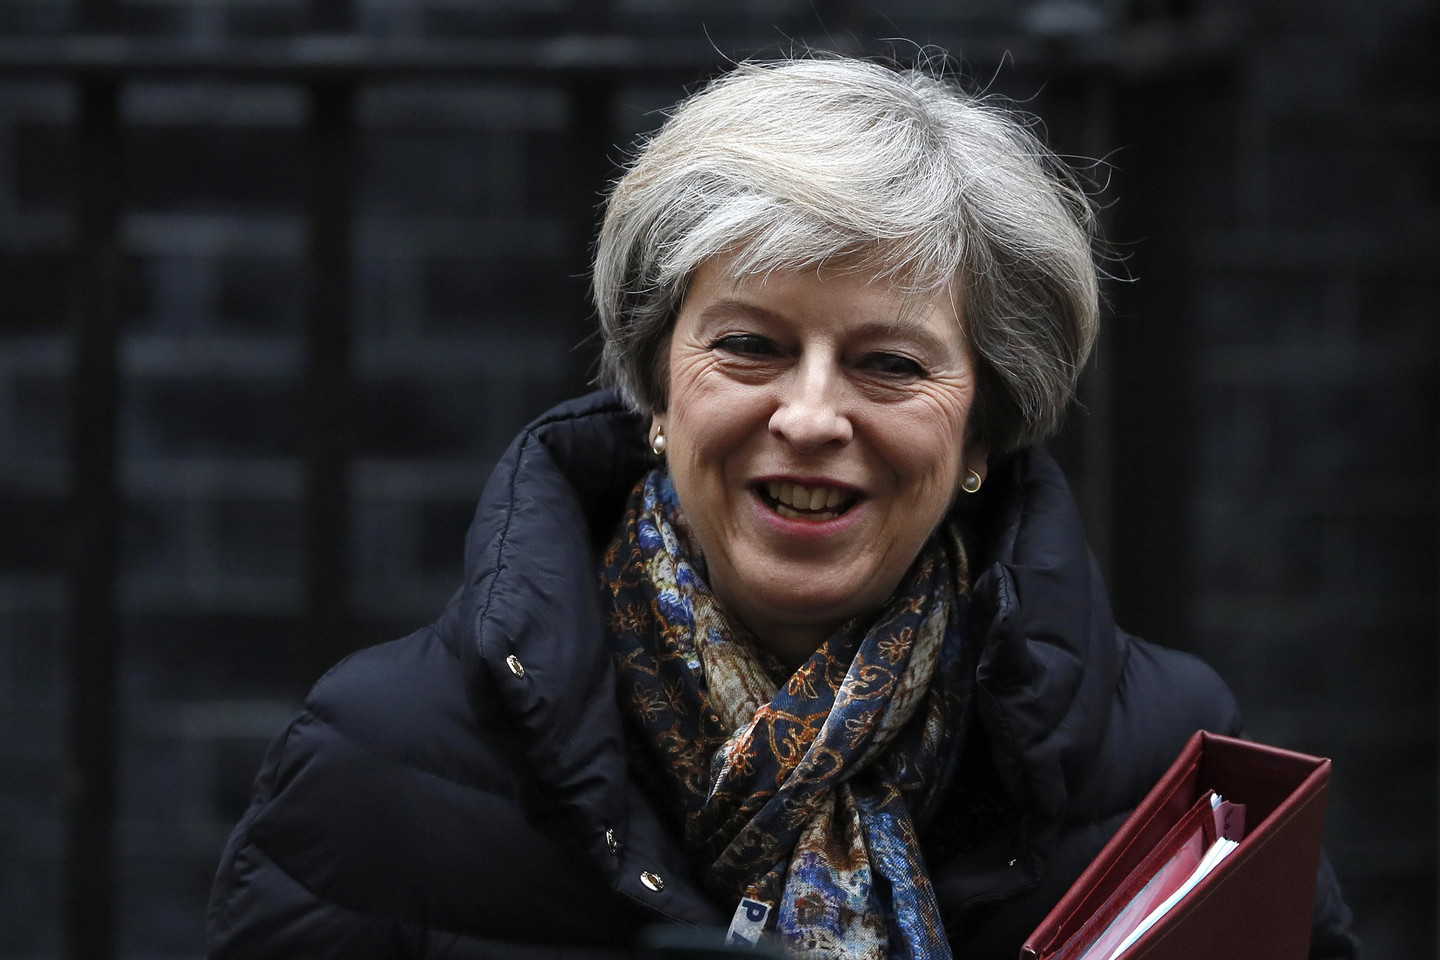 Didžiosios Britanijos ministrė pirmininkė Theresa May šią savaitę bus pirmoji užsienio lyderė, kuri susitiks su Donaldu Trumpu po jo inauguracijos ir bandys aptarti svarbią prekybos su JAV sutartį po Britanijos pasitraukimo iš Europos Sąjungos.<br>Reuters/Scanpix nuotr.